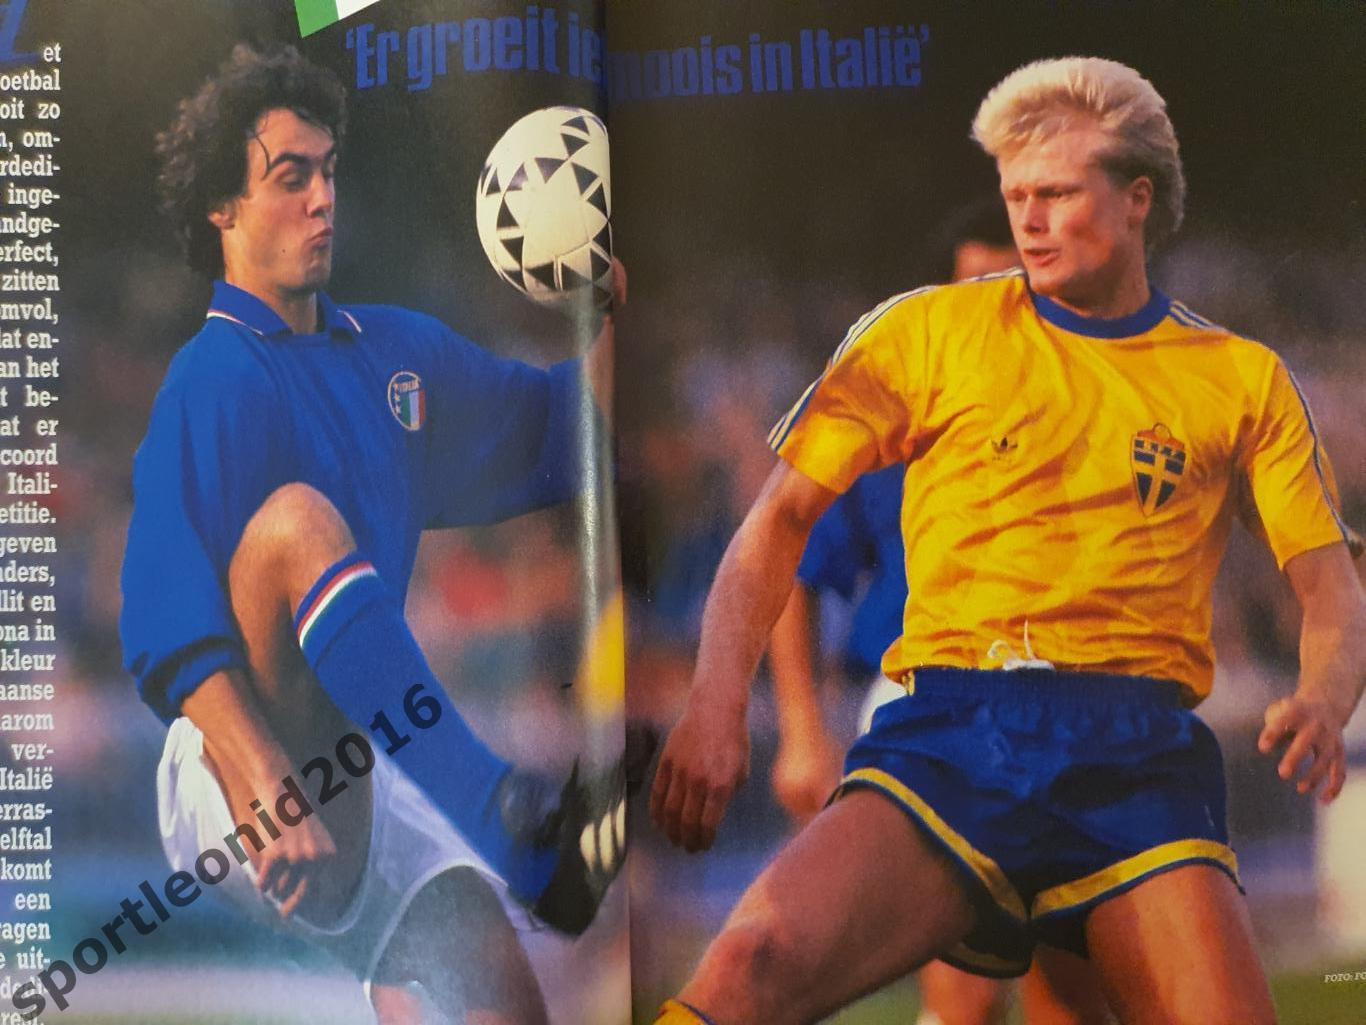 Voetbal International 1988+87.10 топ выпусков.В том числе И ВСЕ к ЧE-88.1 5